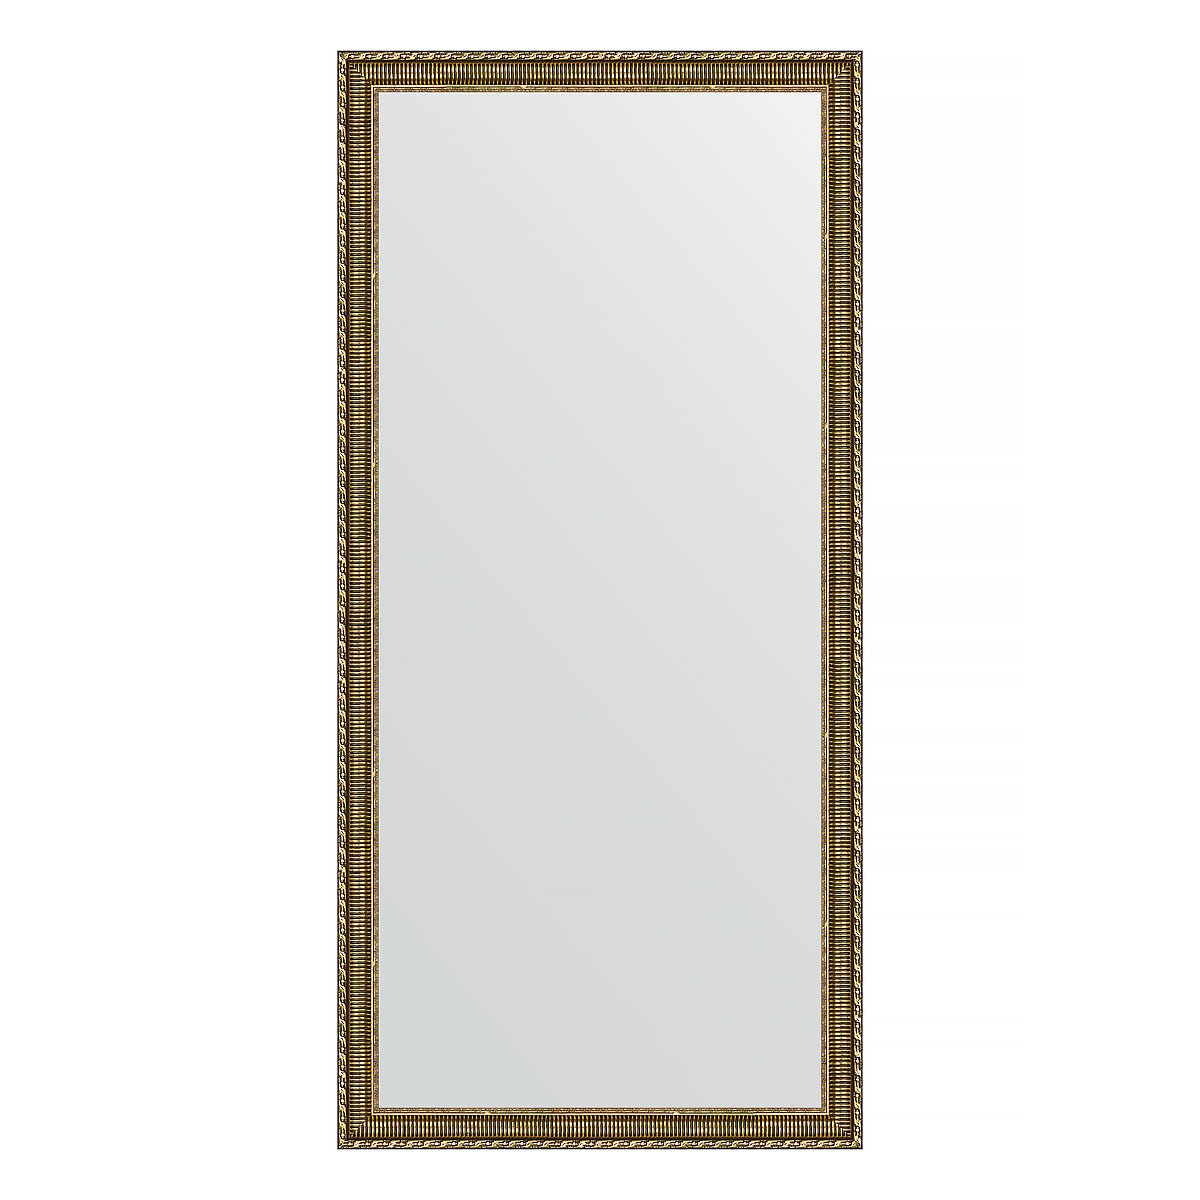 Зеркало в багетной раме Evoform золотой акведук 61 мм 74х154 см зеркало в багетной раме evoform золотой акведук 61 мм 74х154 см